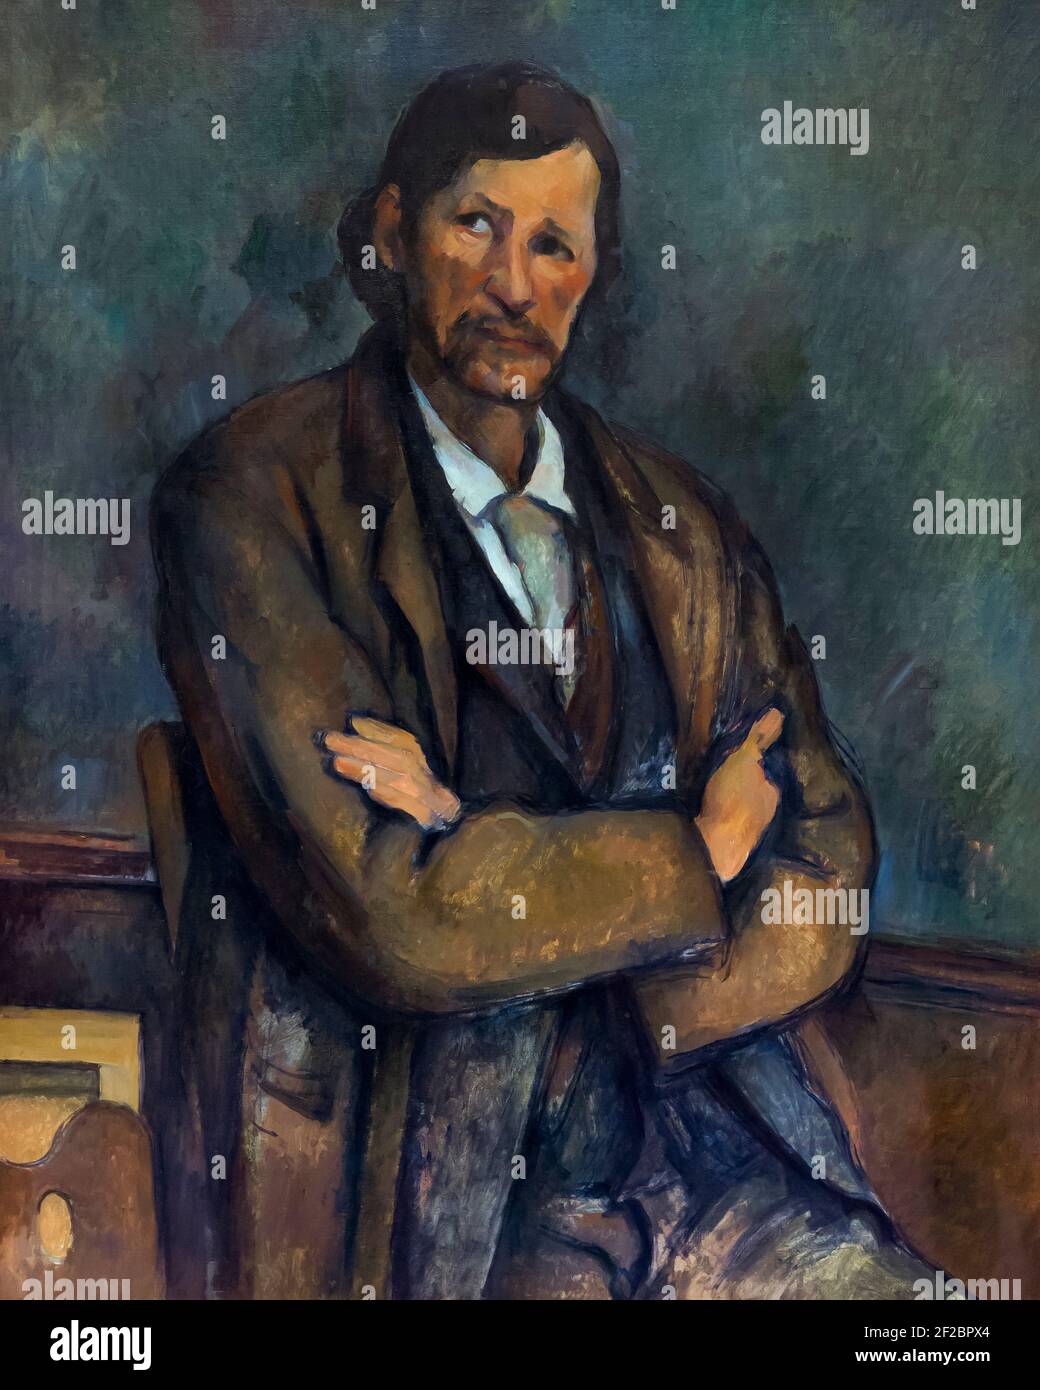 Mann mit gekreuzten Armen, Homme aux bras croises, Paul Cezanne, um 1899, Solomon R. Guggenheim Museum, Manhattan, New York City, USA, Nordamerika Stockfoto